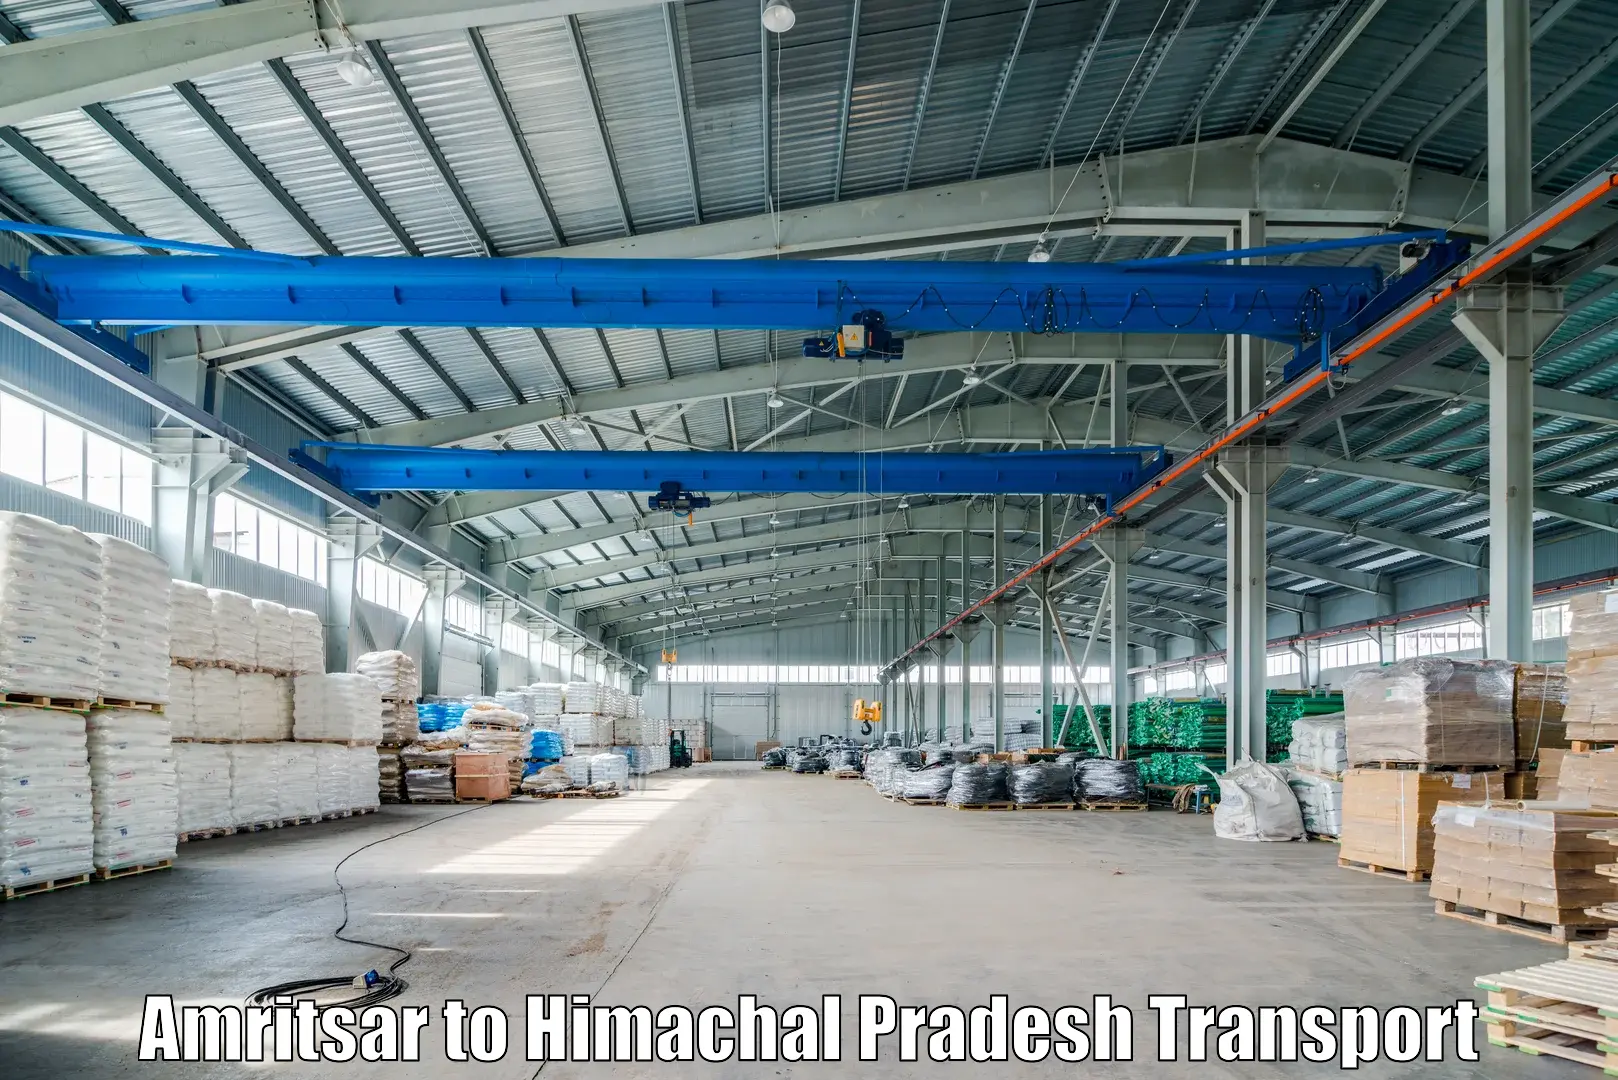 Furniture transport service Amritsar to Himachal Pradesh